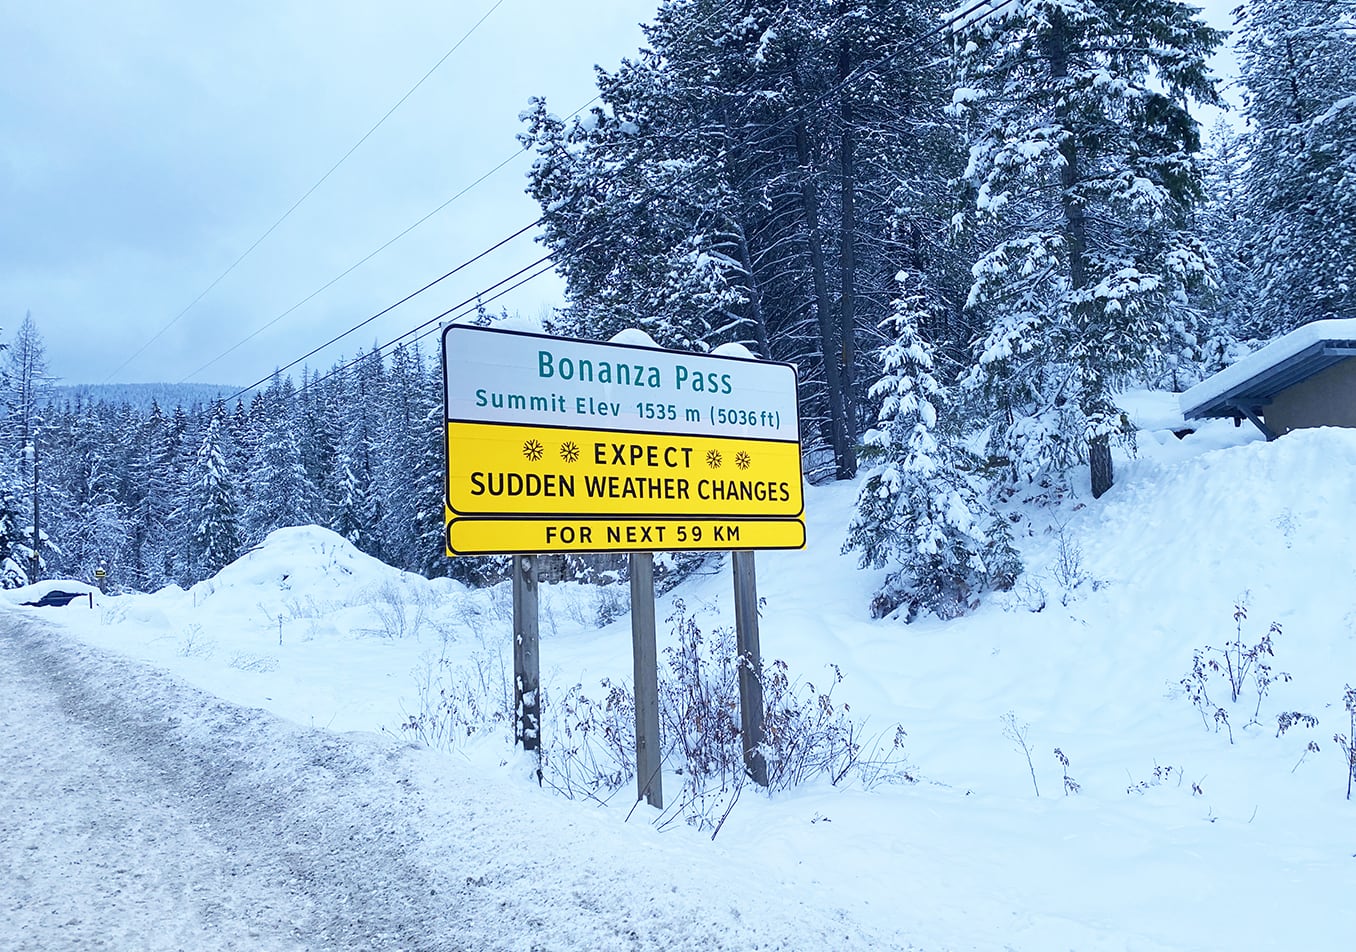 Environment Canada issues Snowfall warning for Highway 3 — Paulson Summit to Kootenay Pass